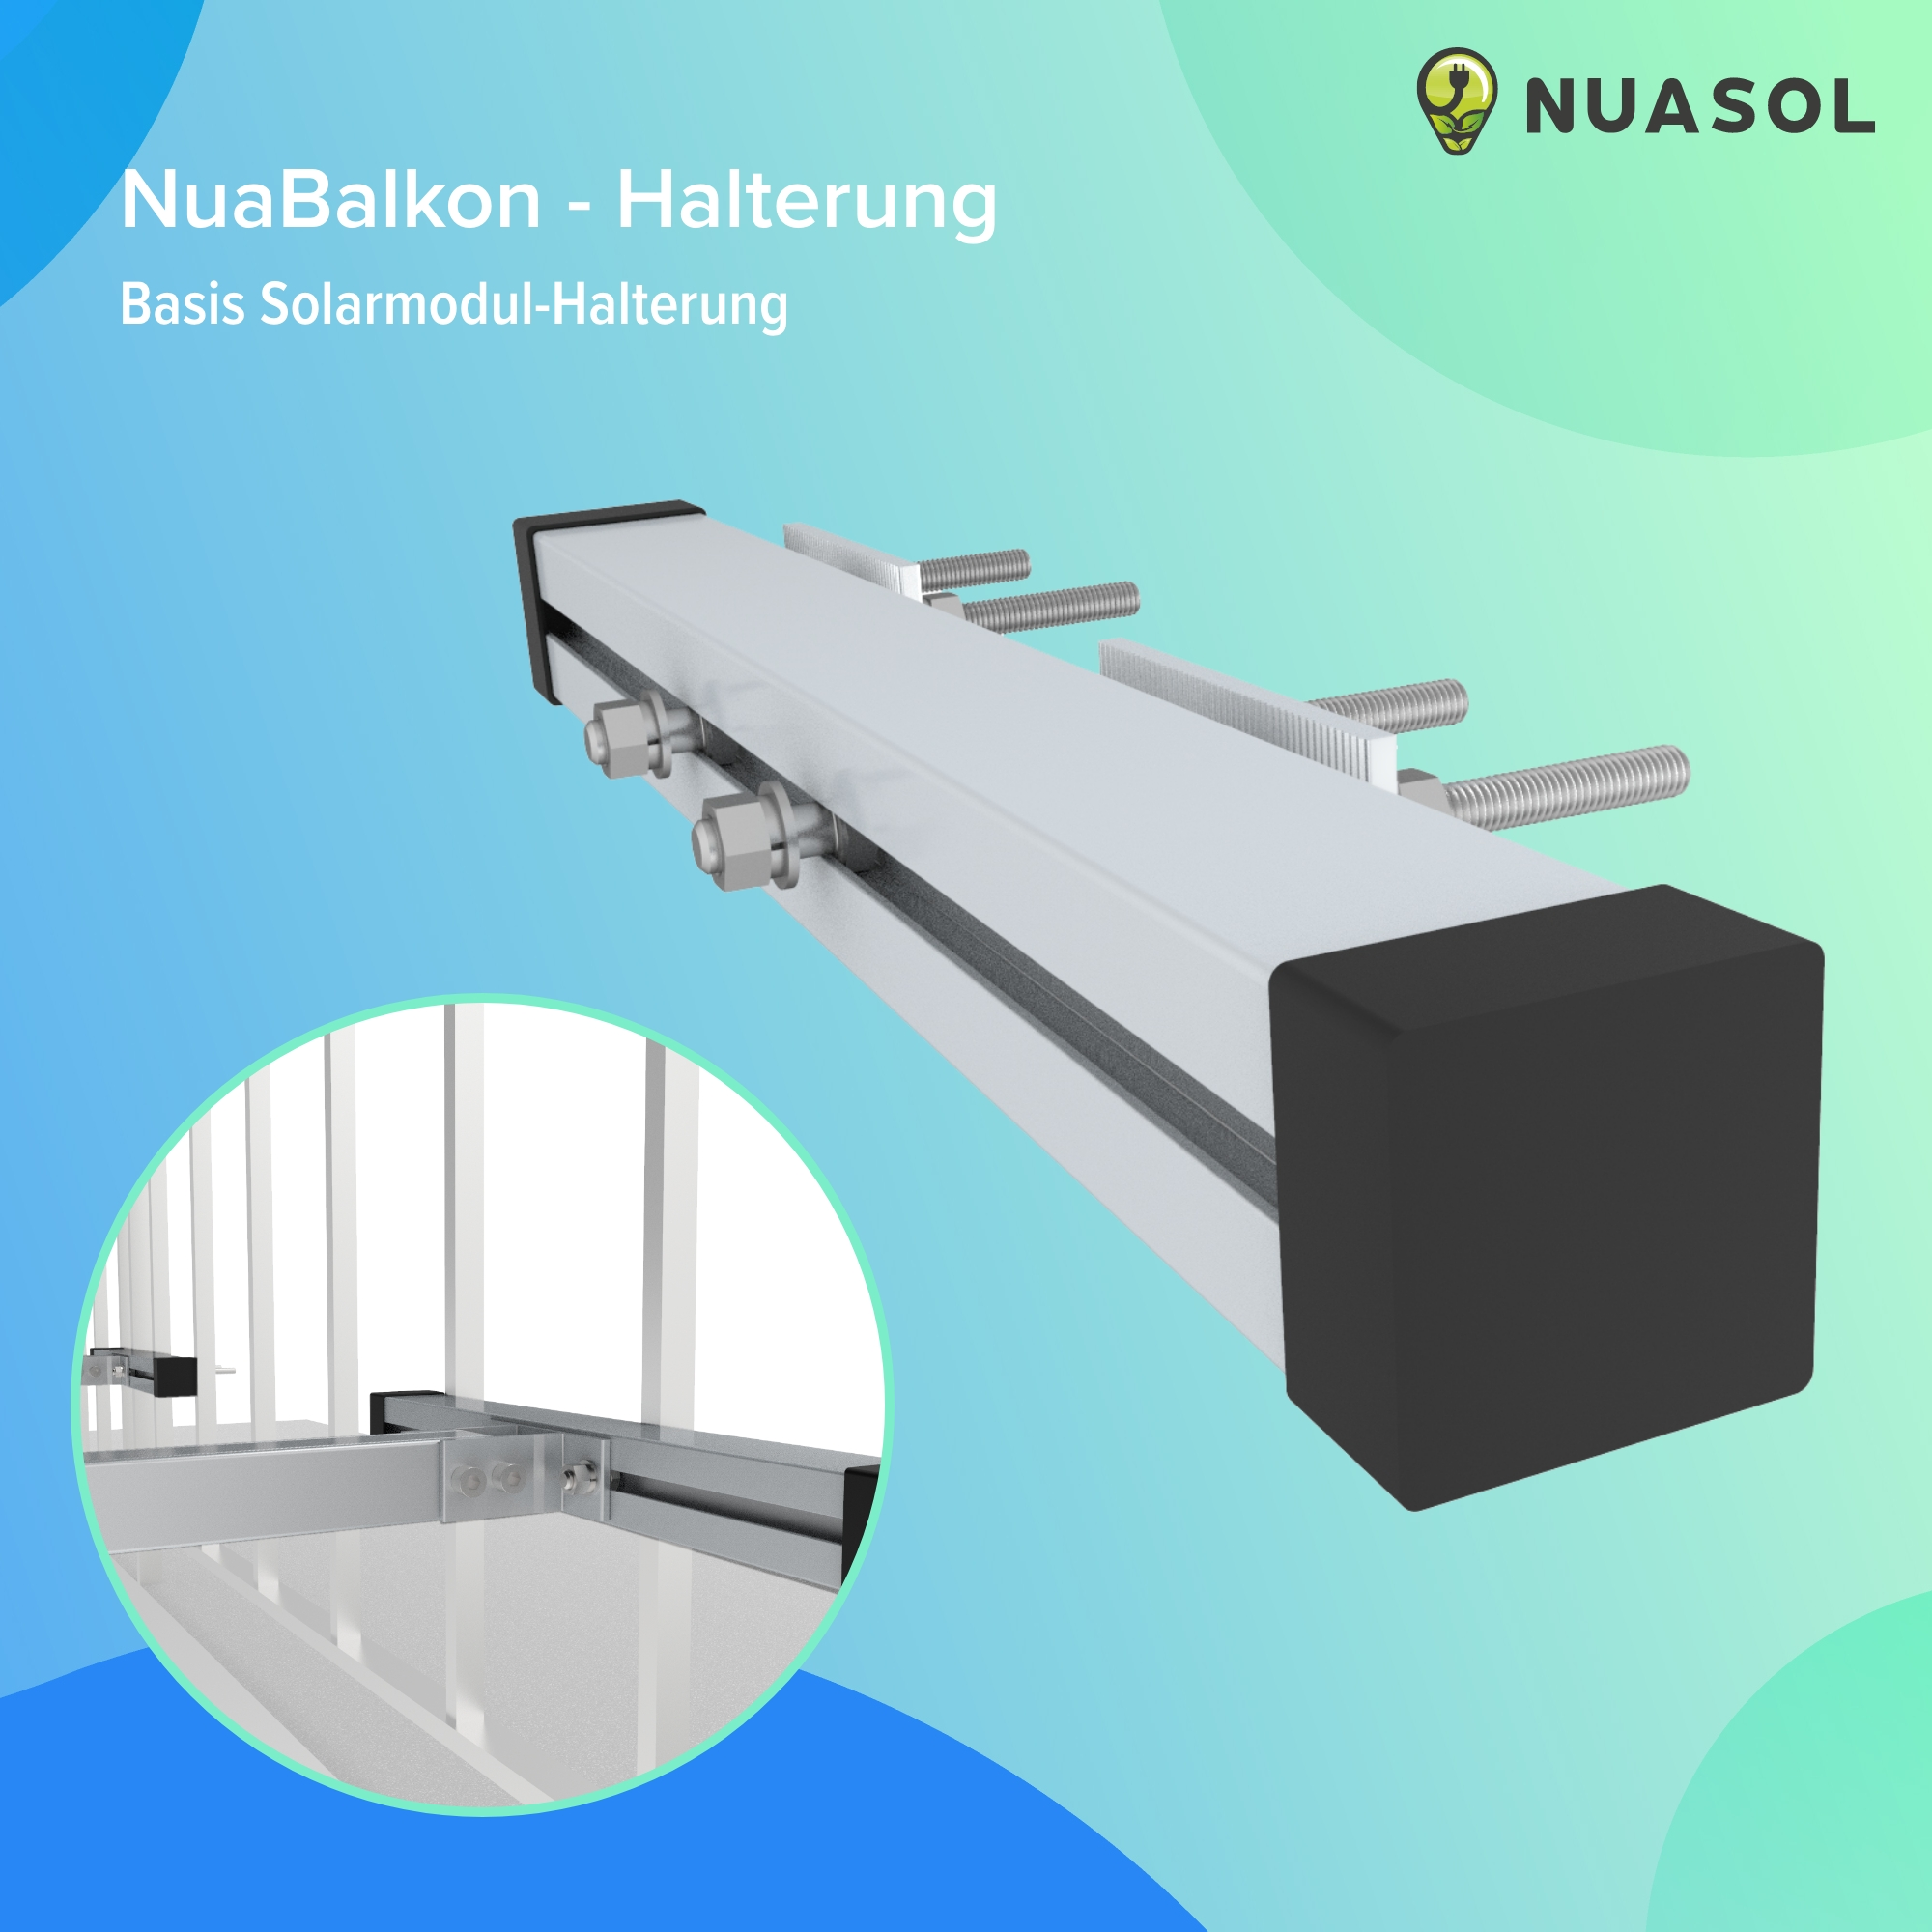 Balkonkraftwerkhalterung Silber Befestigung 2 Geländer NUASOL Solarmodule Photovoltaik,